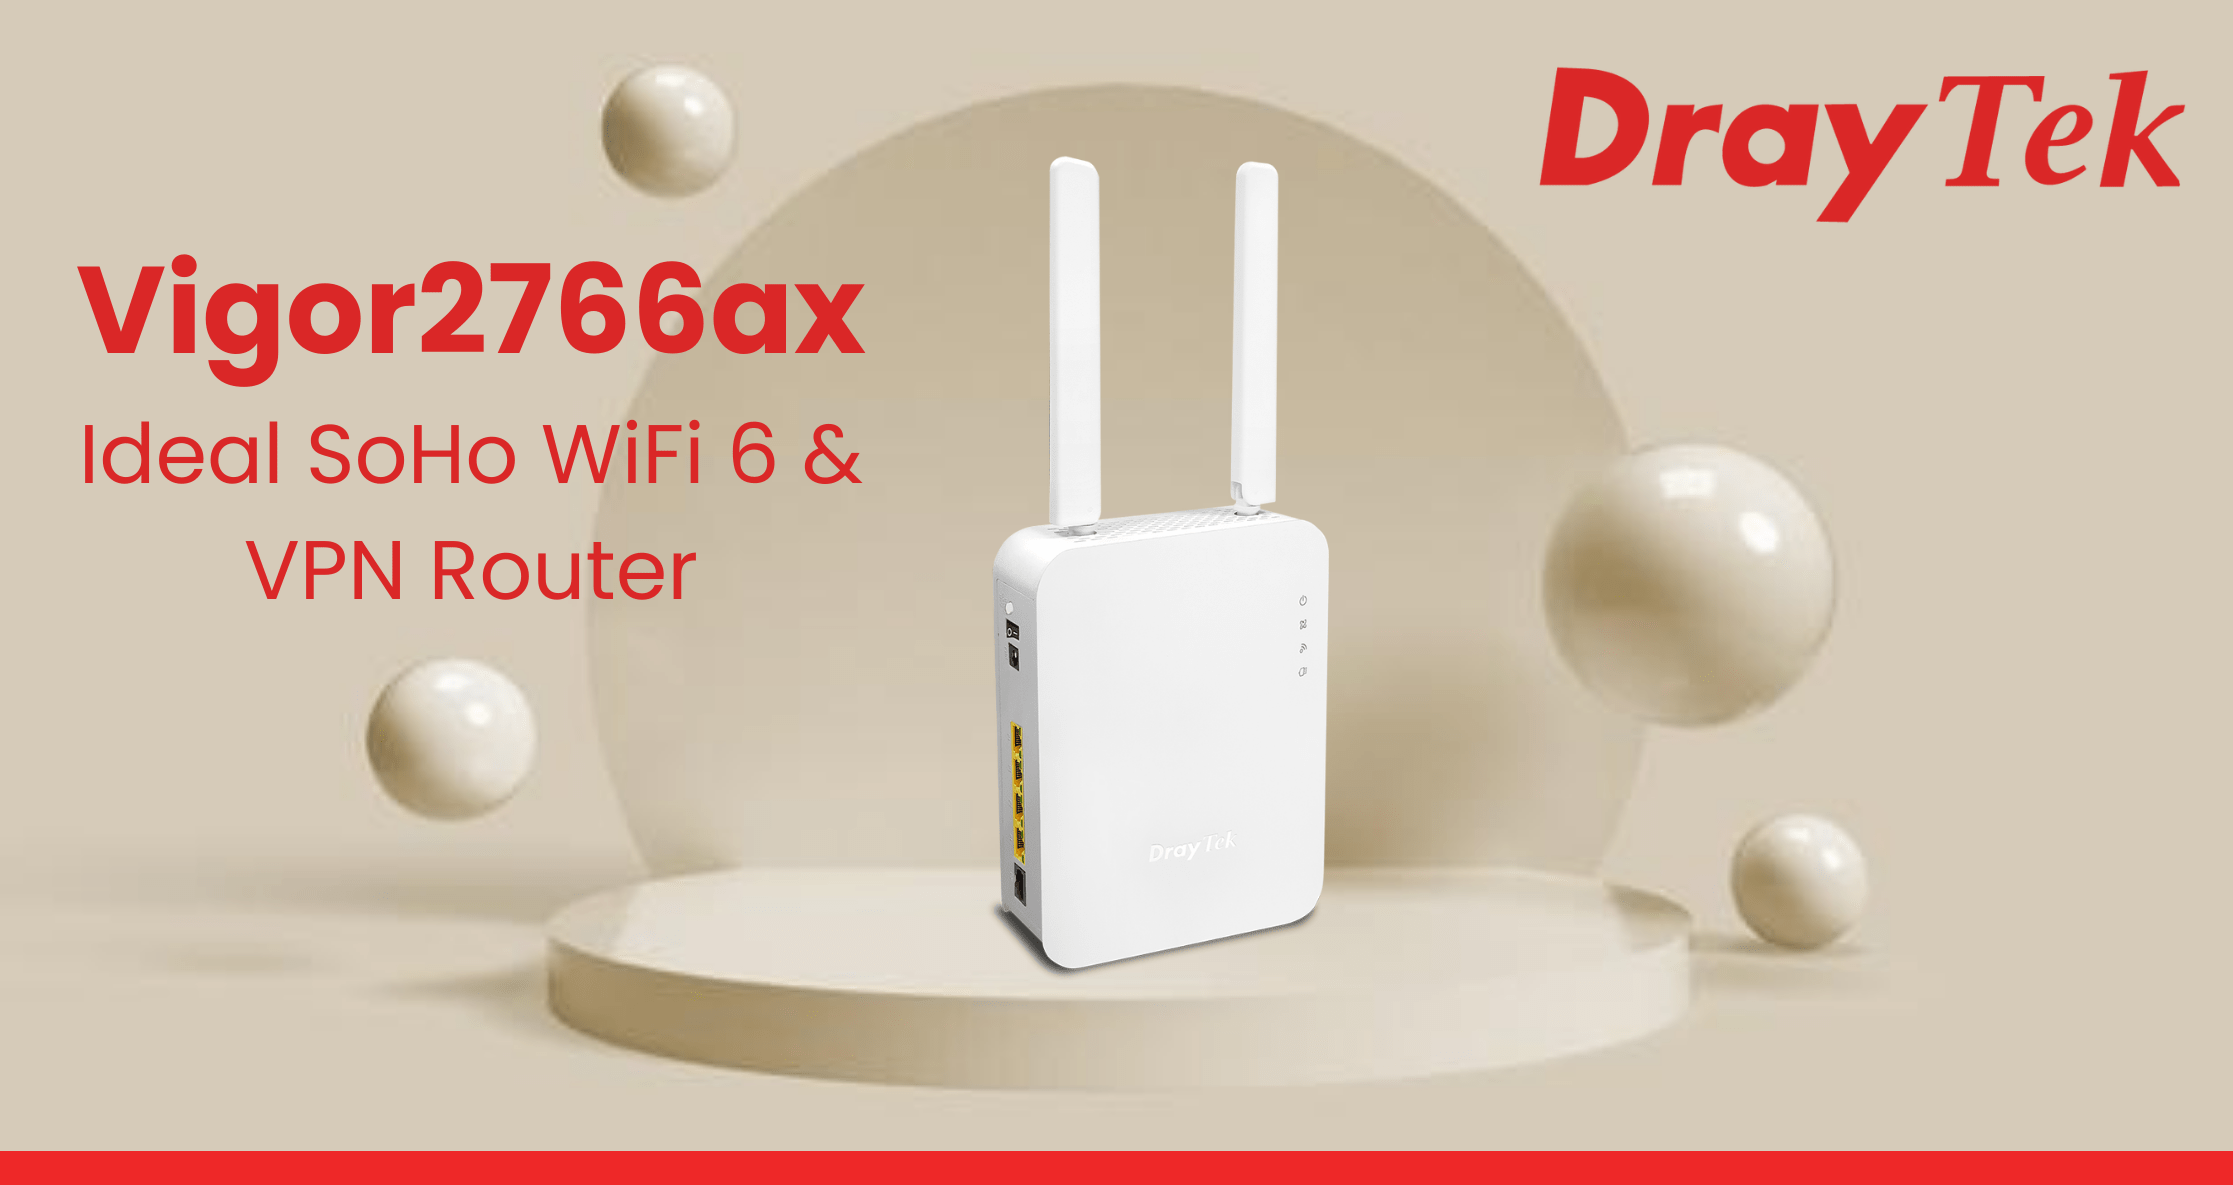 DrayTek Vigor 2766ax router header image